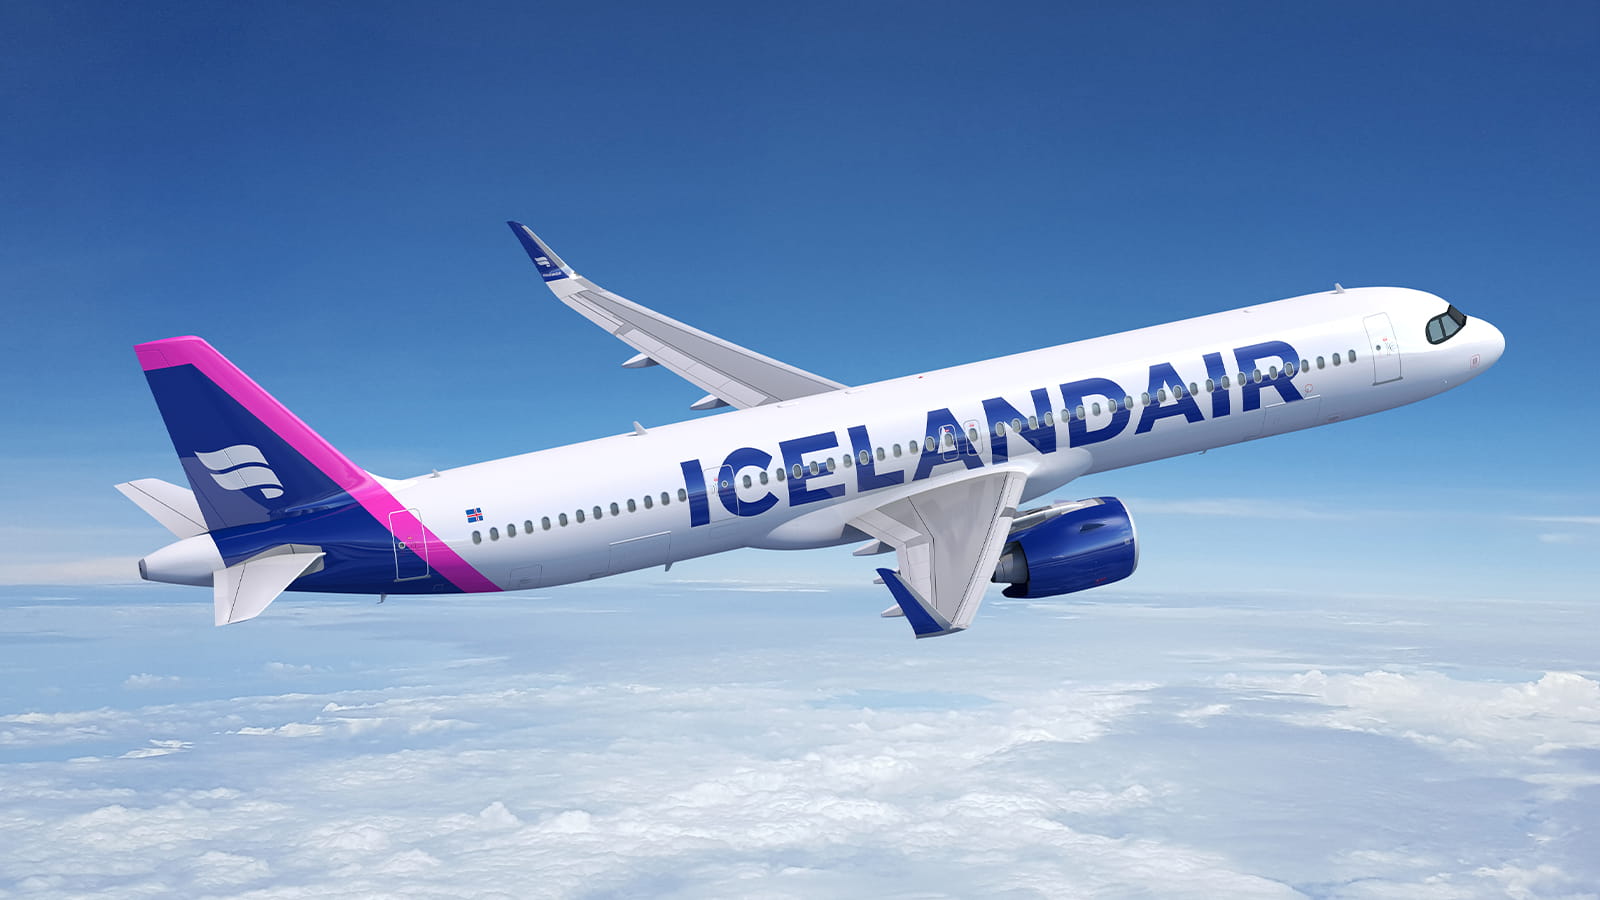 Icelandair A321 NeoXLR